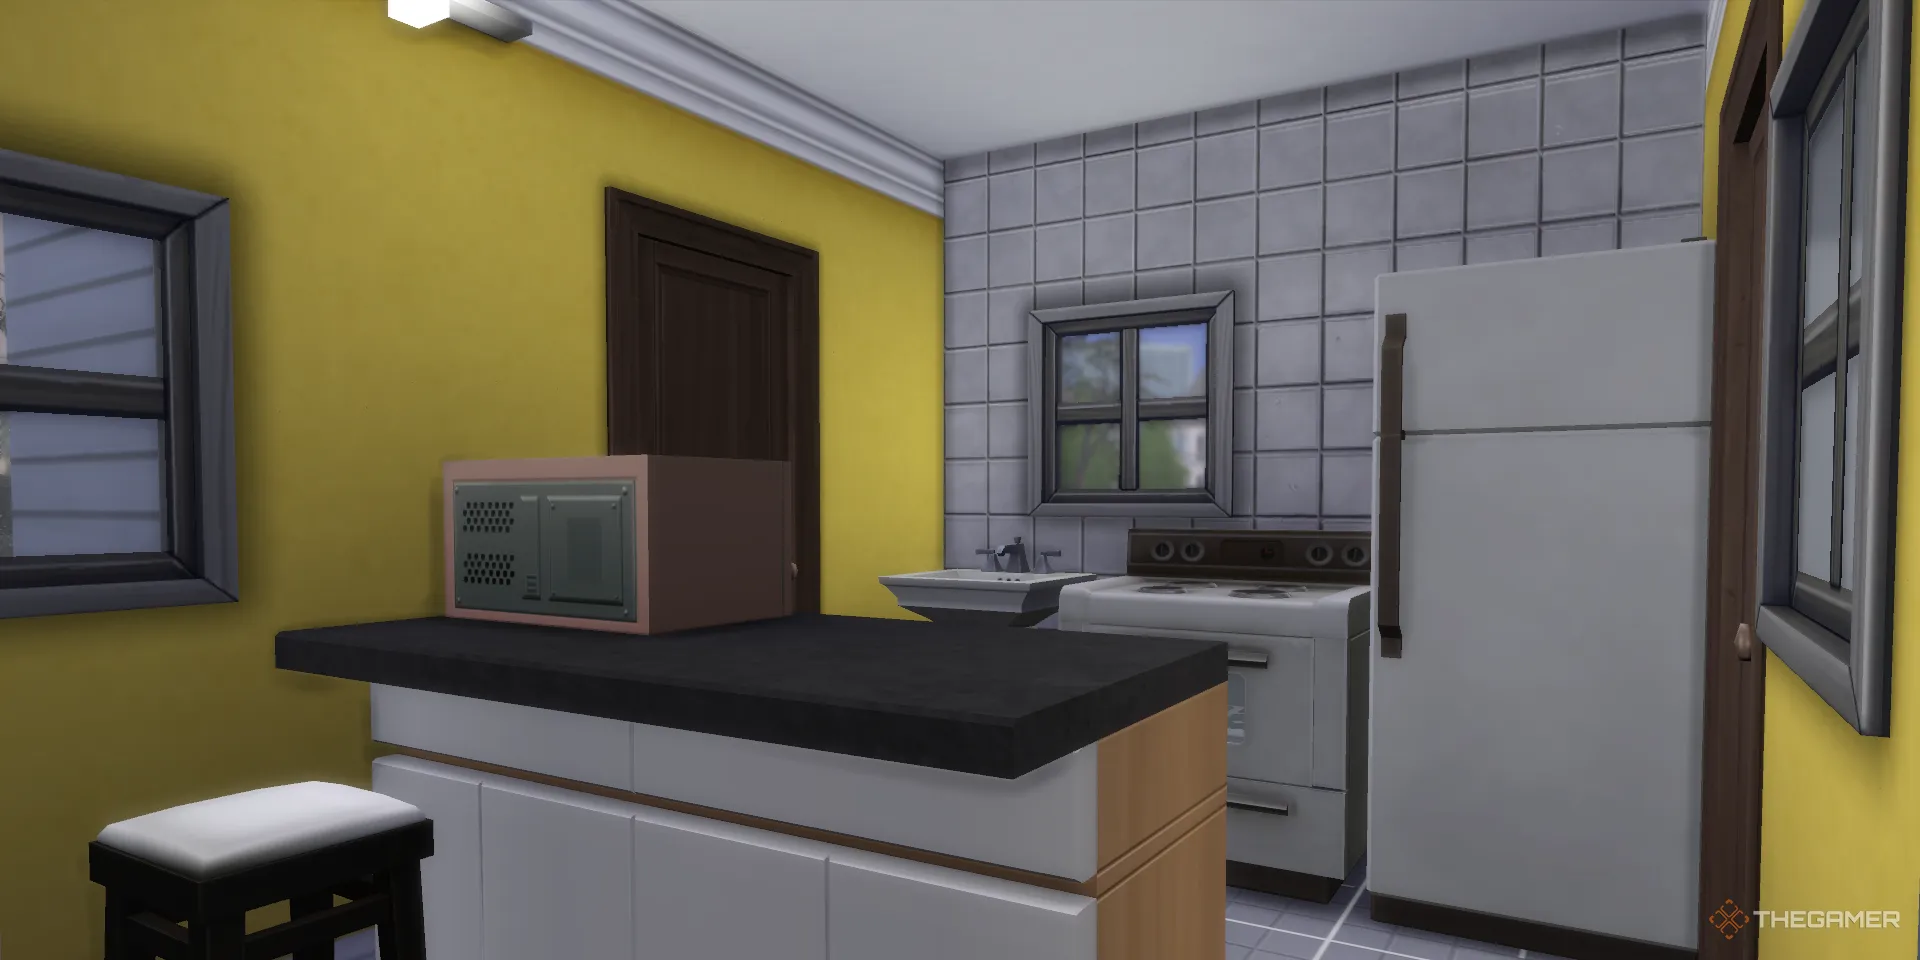 《模拟人生4》中带有窗户的小厨房